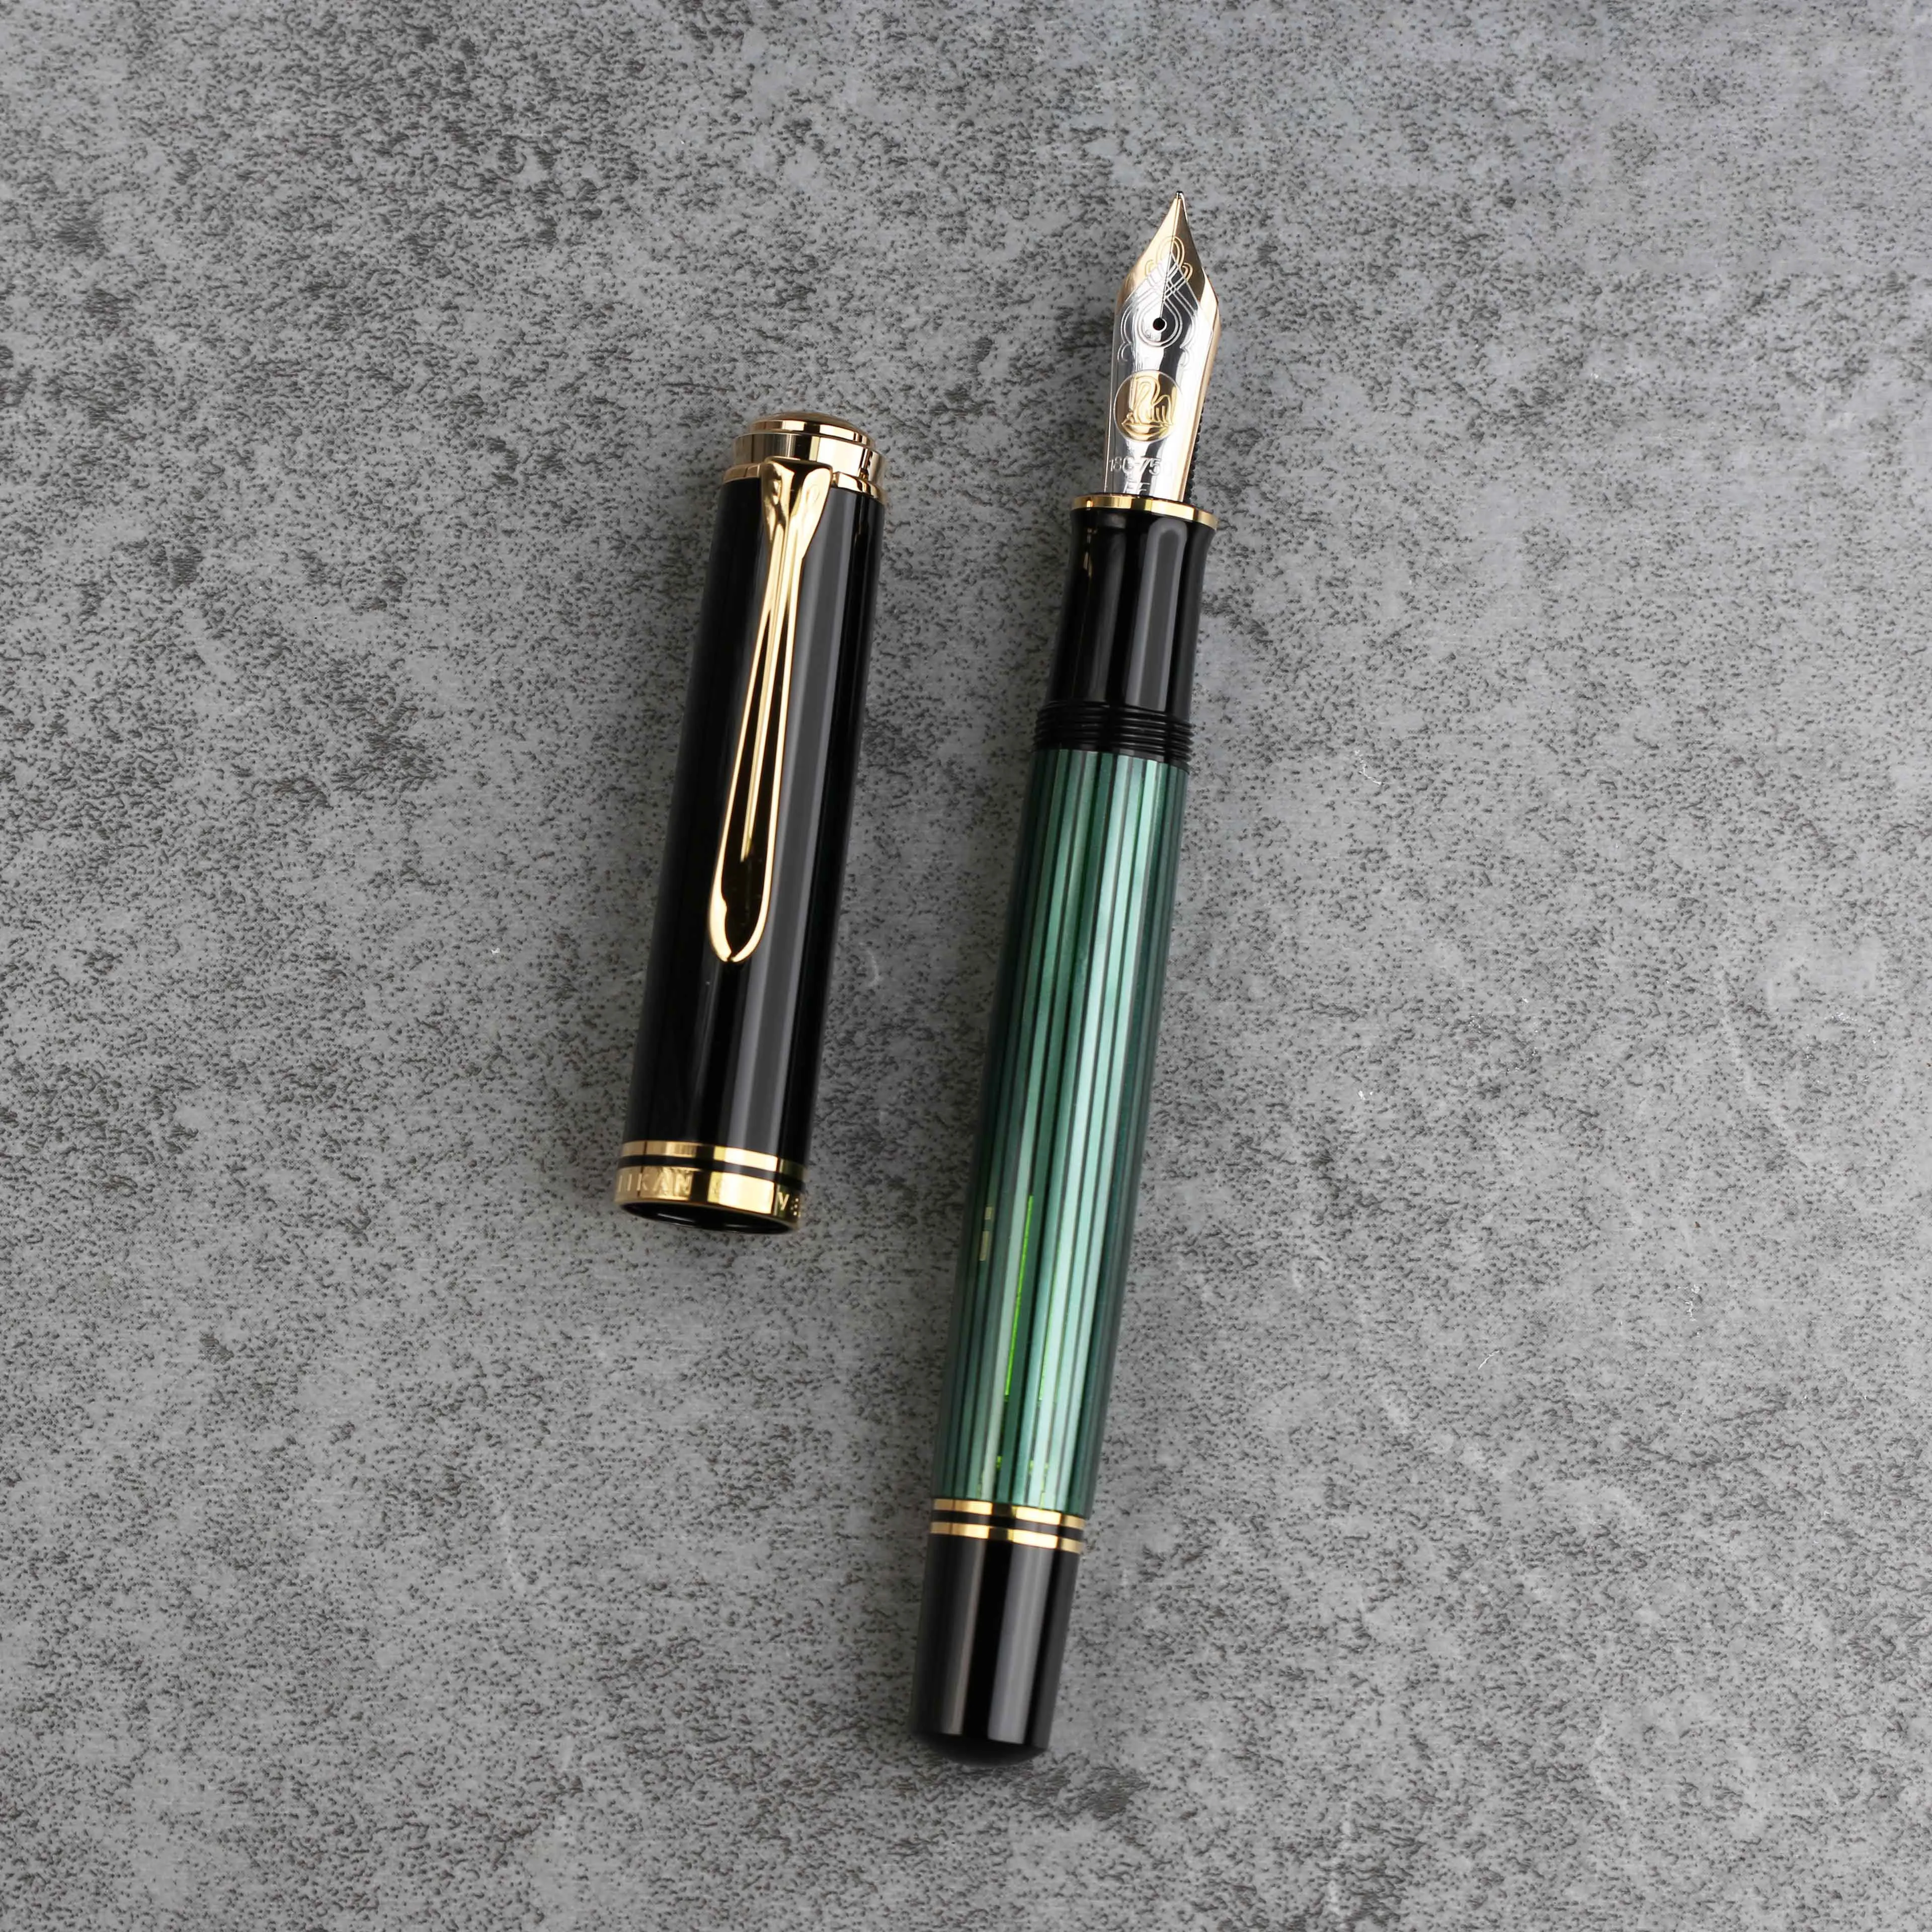 Pelikan-pluma estilográfica M1000 Original alemana, pluma estilográfica con punta dorada de 18K, tira negra y verde, tira azul, serie Emperor Soveran, regalo de negocios